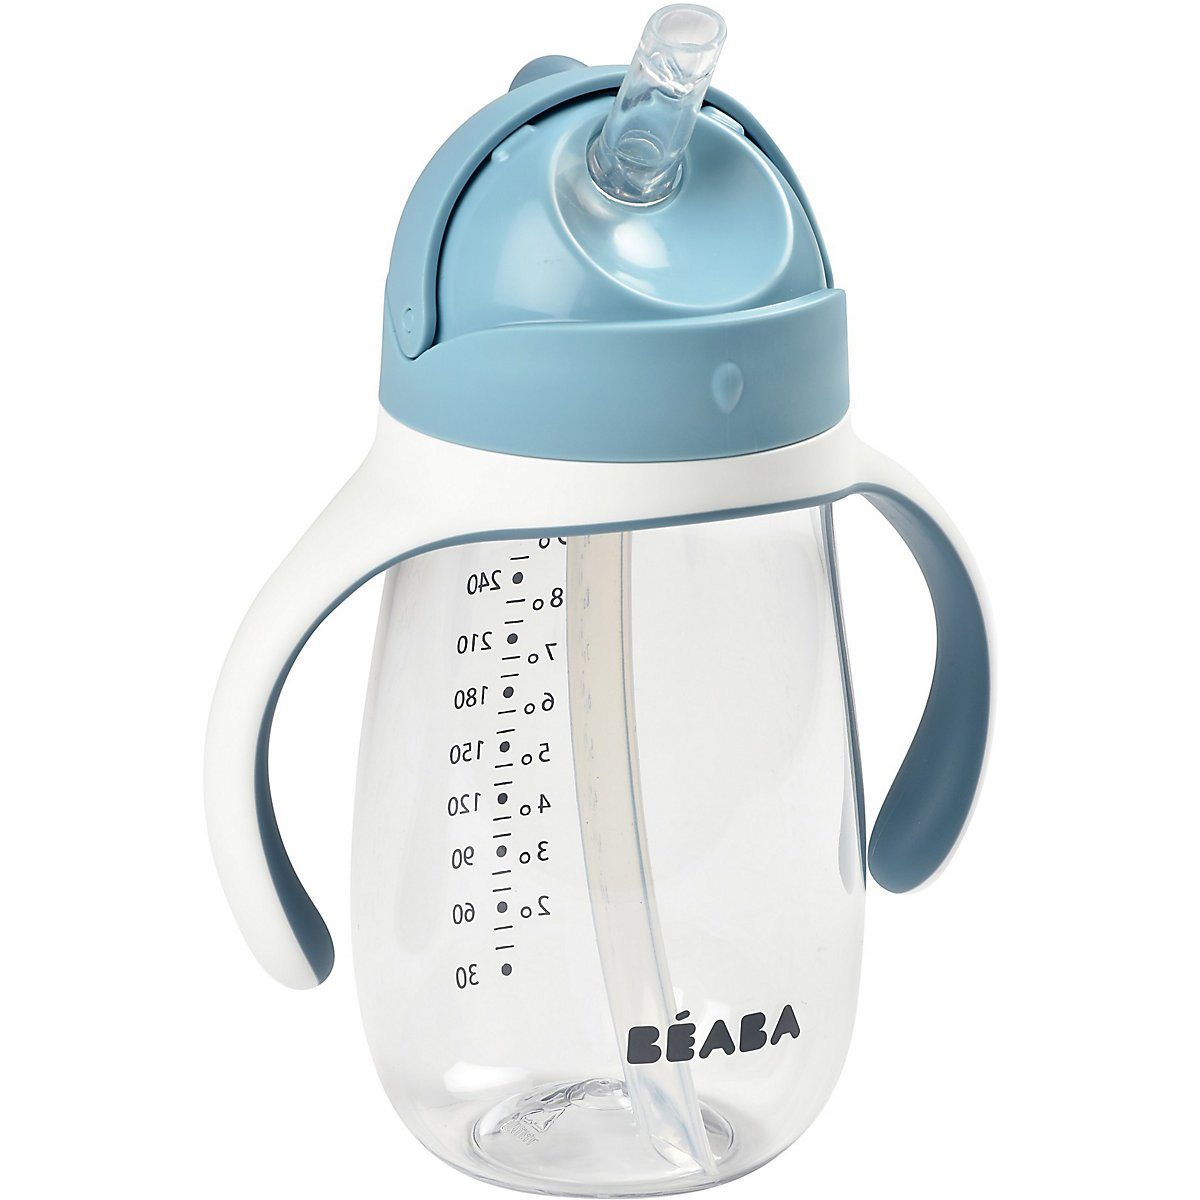 Kinder Babyernährung BÉABA Trinklernbecher Trinkflasche mit Strohhalm, 300ml, windy blau